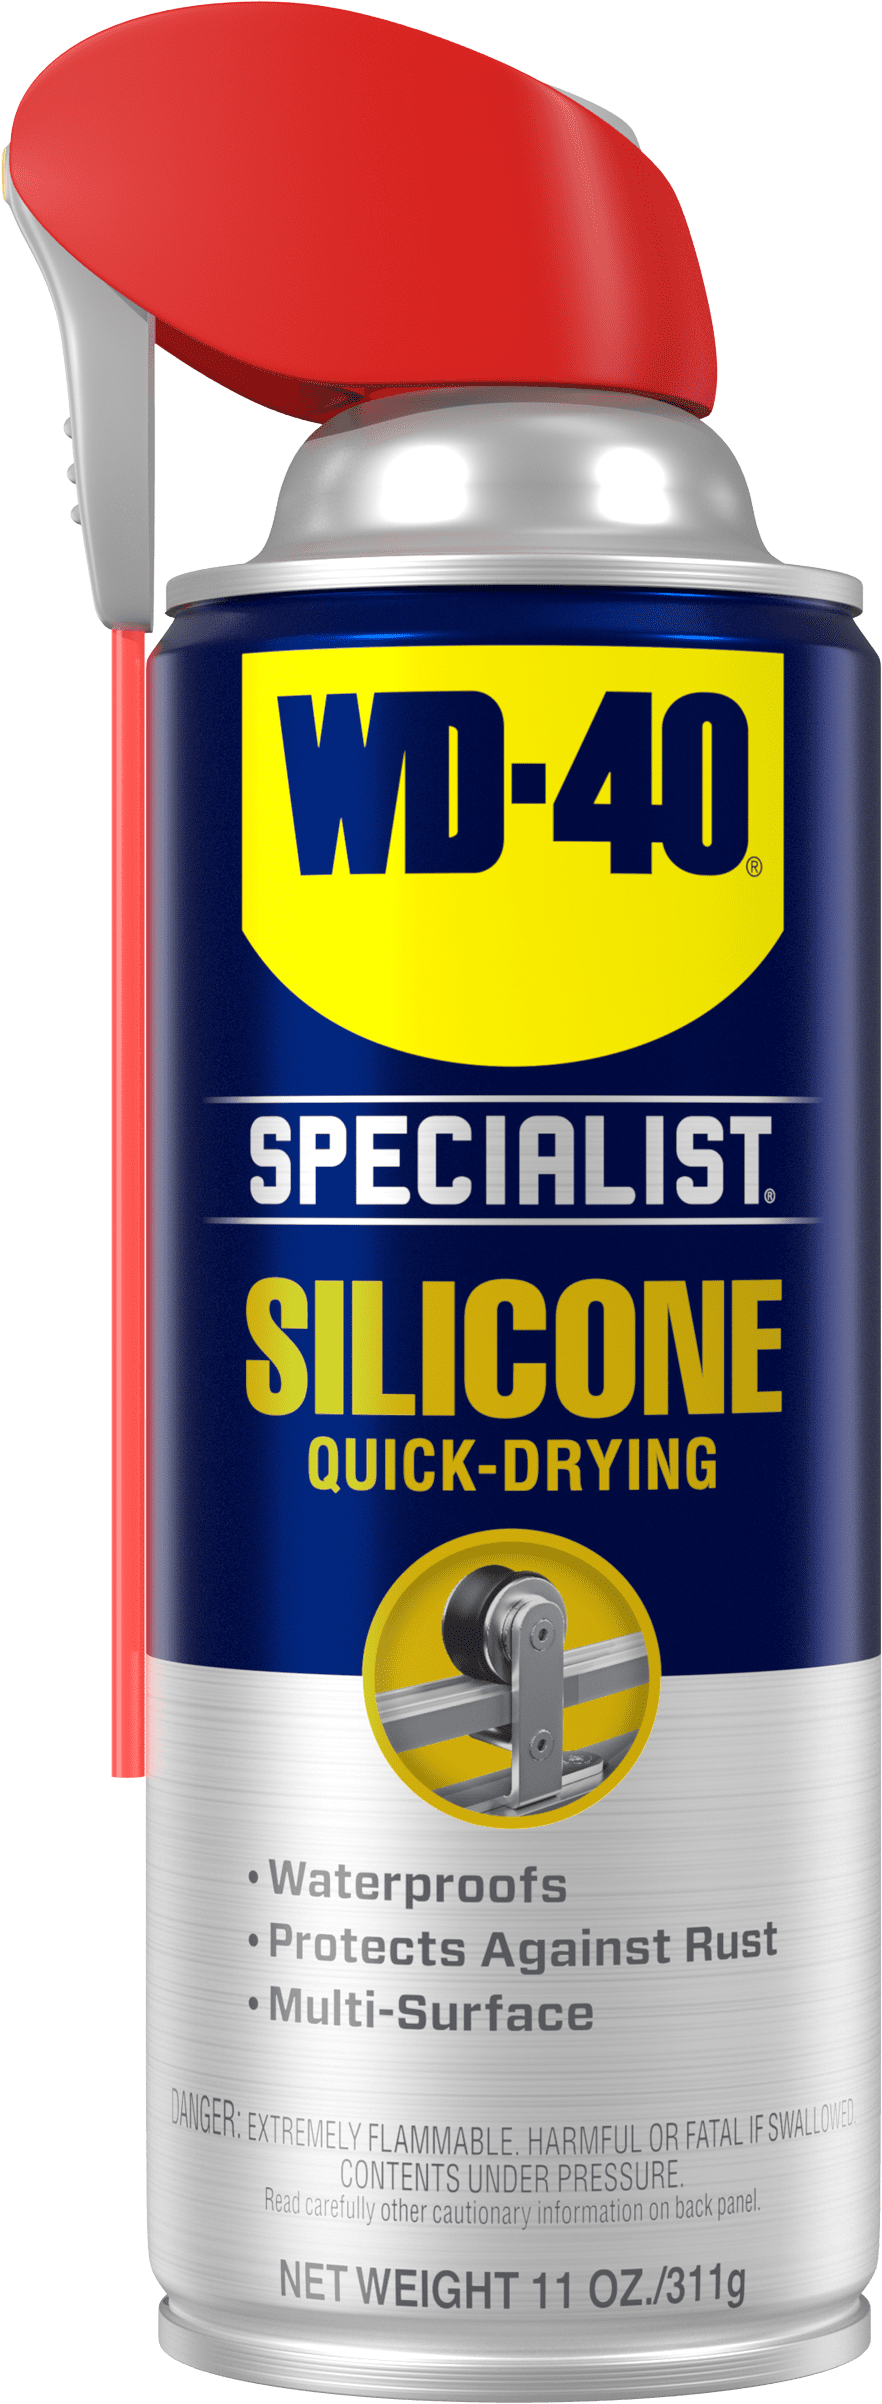 WD-40 Spray Lubrifiant au Silicone Specialist, 100 ml - 3DJake Suisse